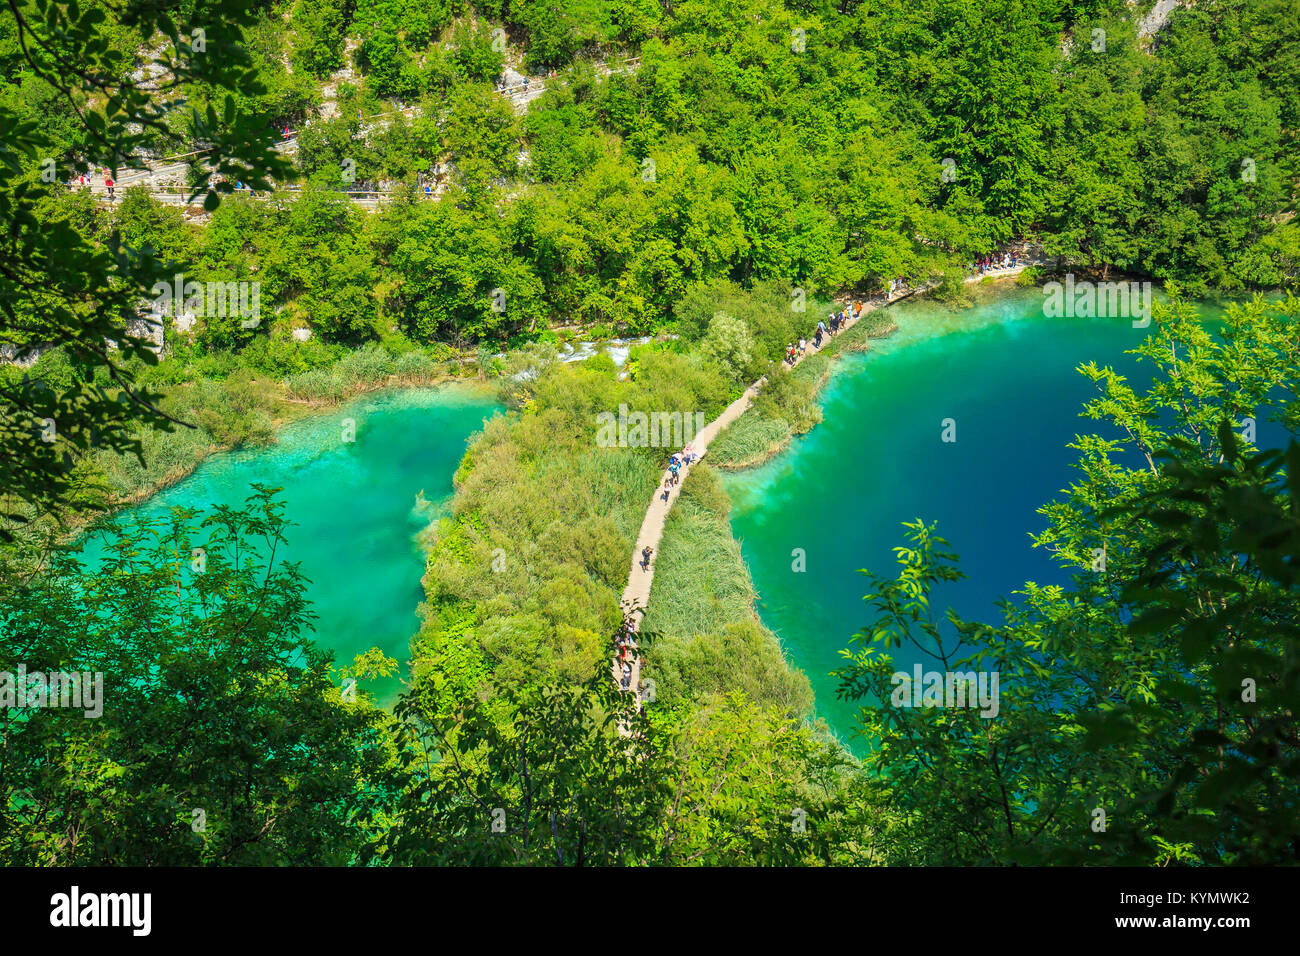 Antena colorida vista escénica en el bosque, los árboles, paisaje, con lagos y cascadas de agua azul de los lagos de Plitvice, Croacia Foto de stock